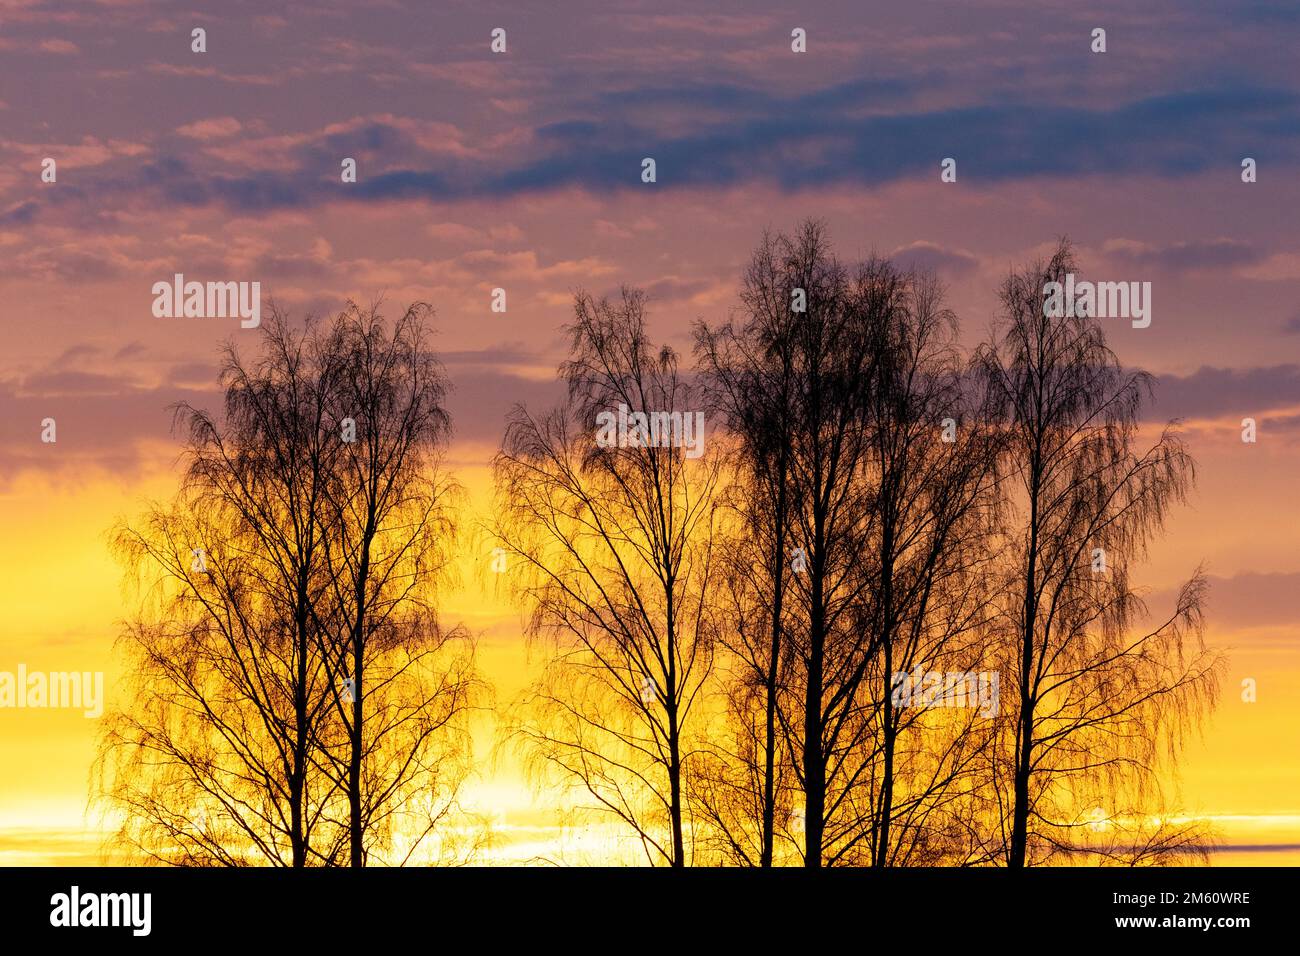 Una silhouette di alberi di betulla d'argento durante un tramonto colorato e vibrante in una serata di tardo autunno in Estonia, Nord Europa Foto Stock